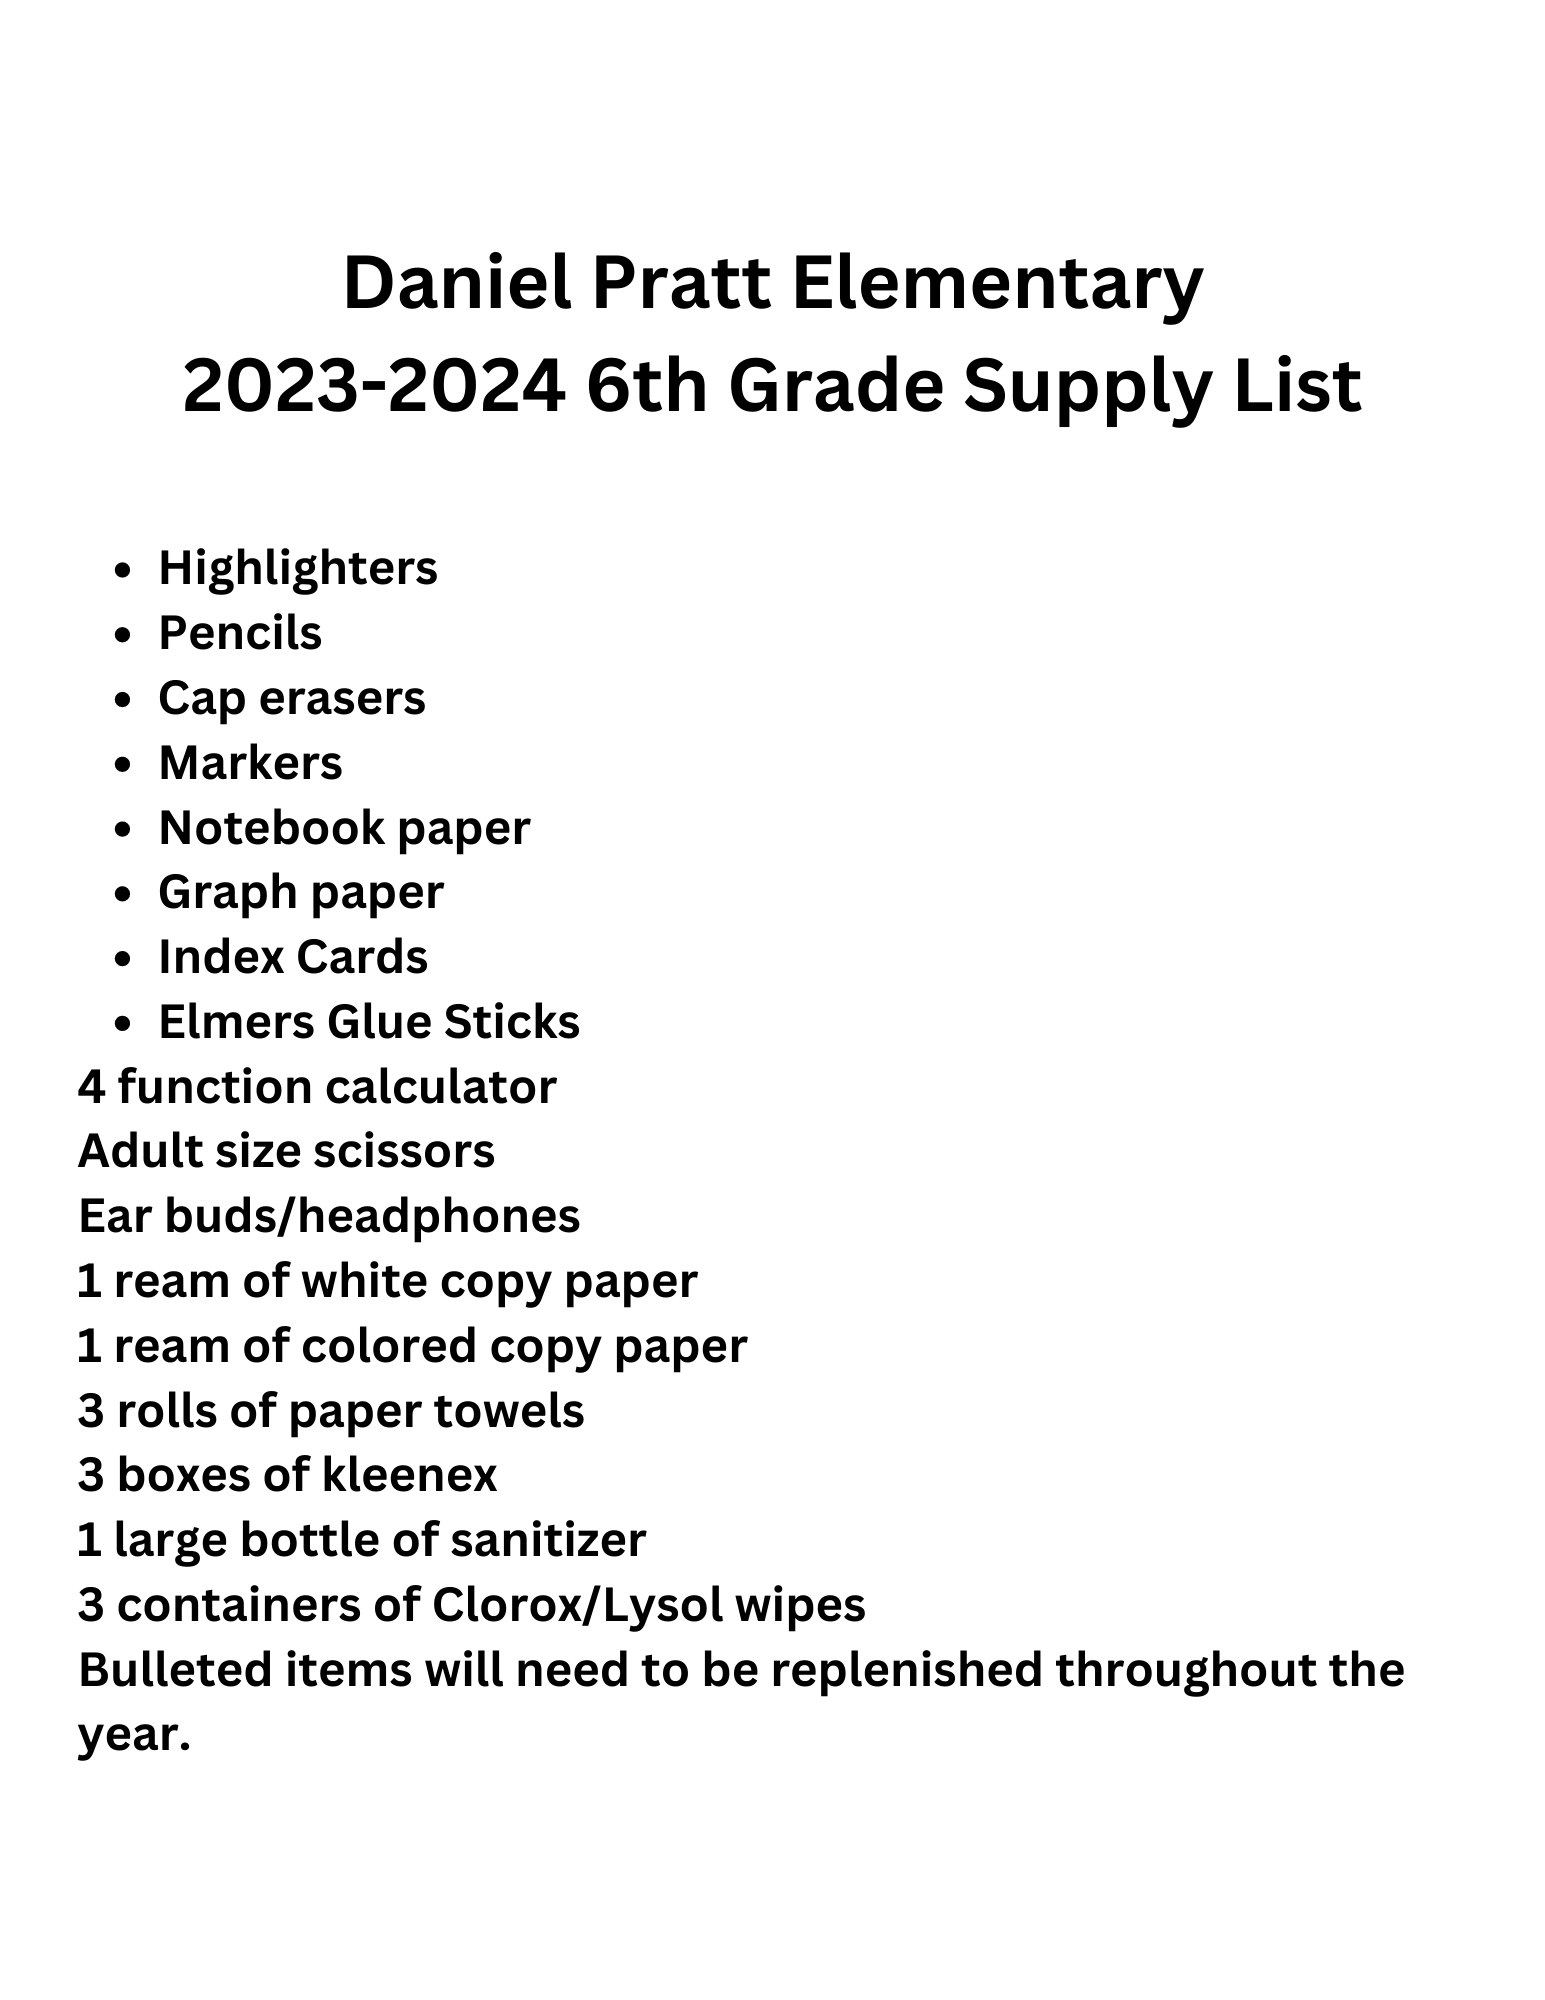 6th grade supply list